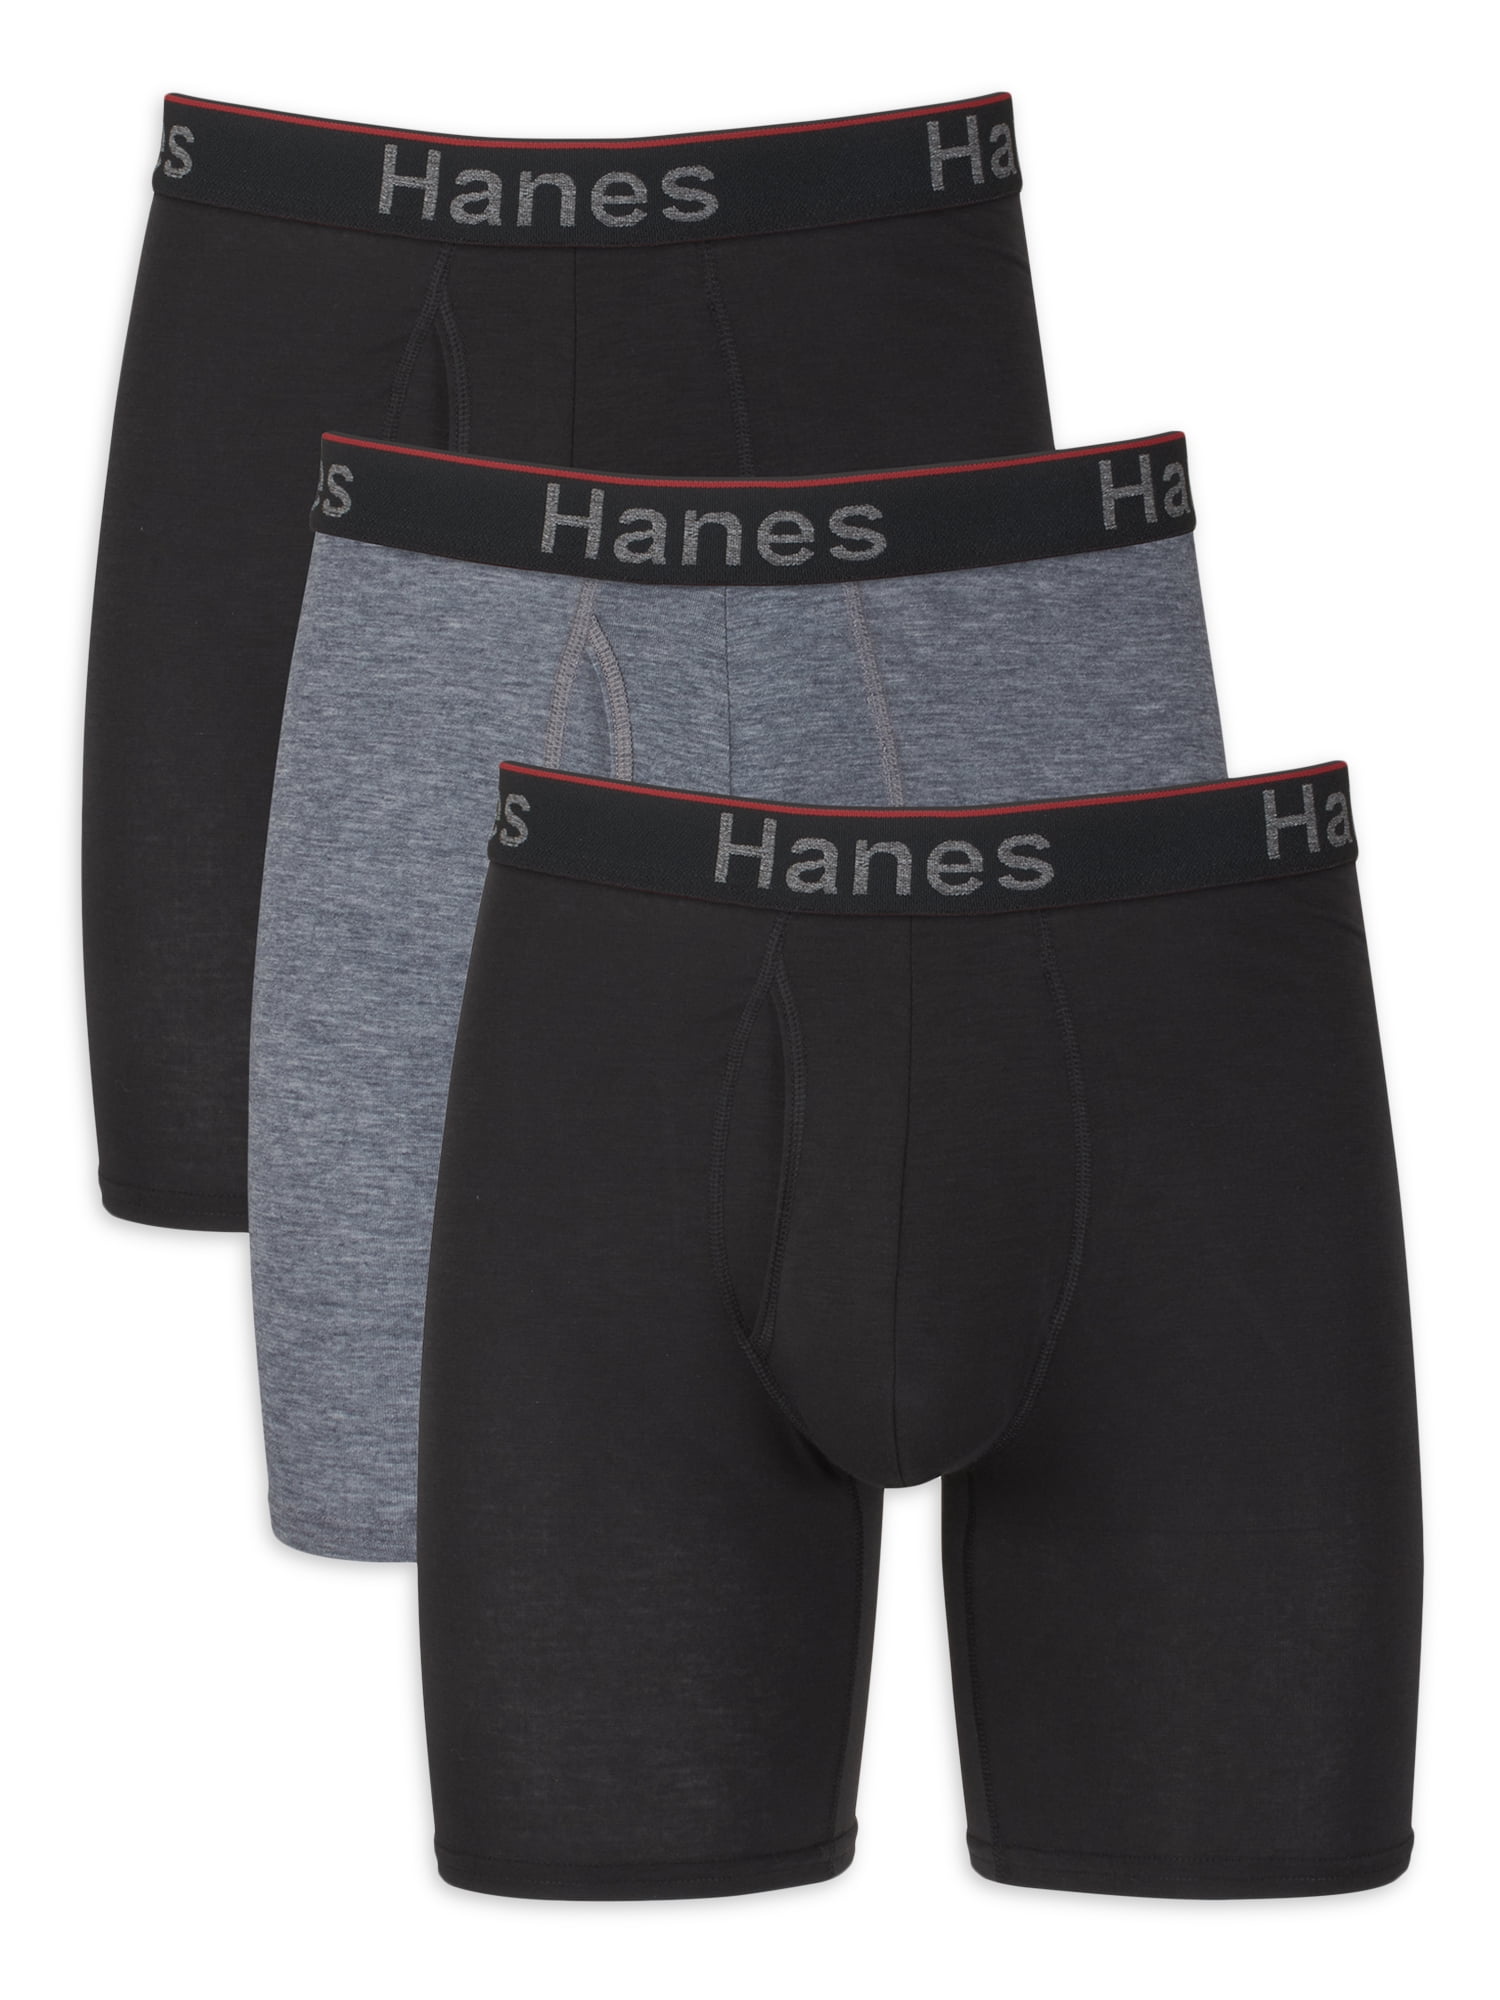 Hanes Men's Comfort Flex Fit Total Support Pouch Long Leg Boxer Briefs, 3 Pack